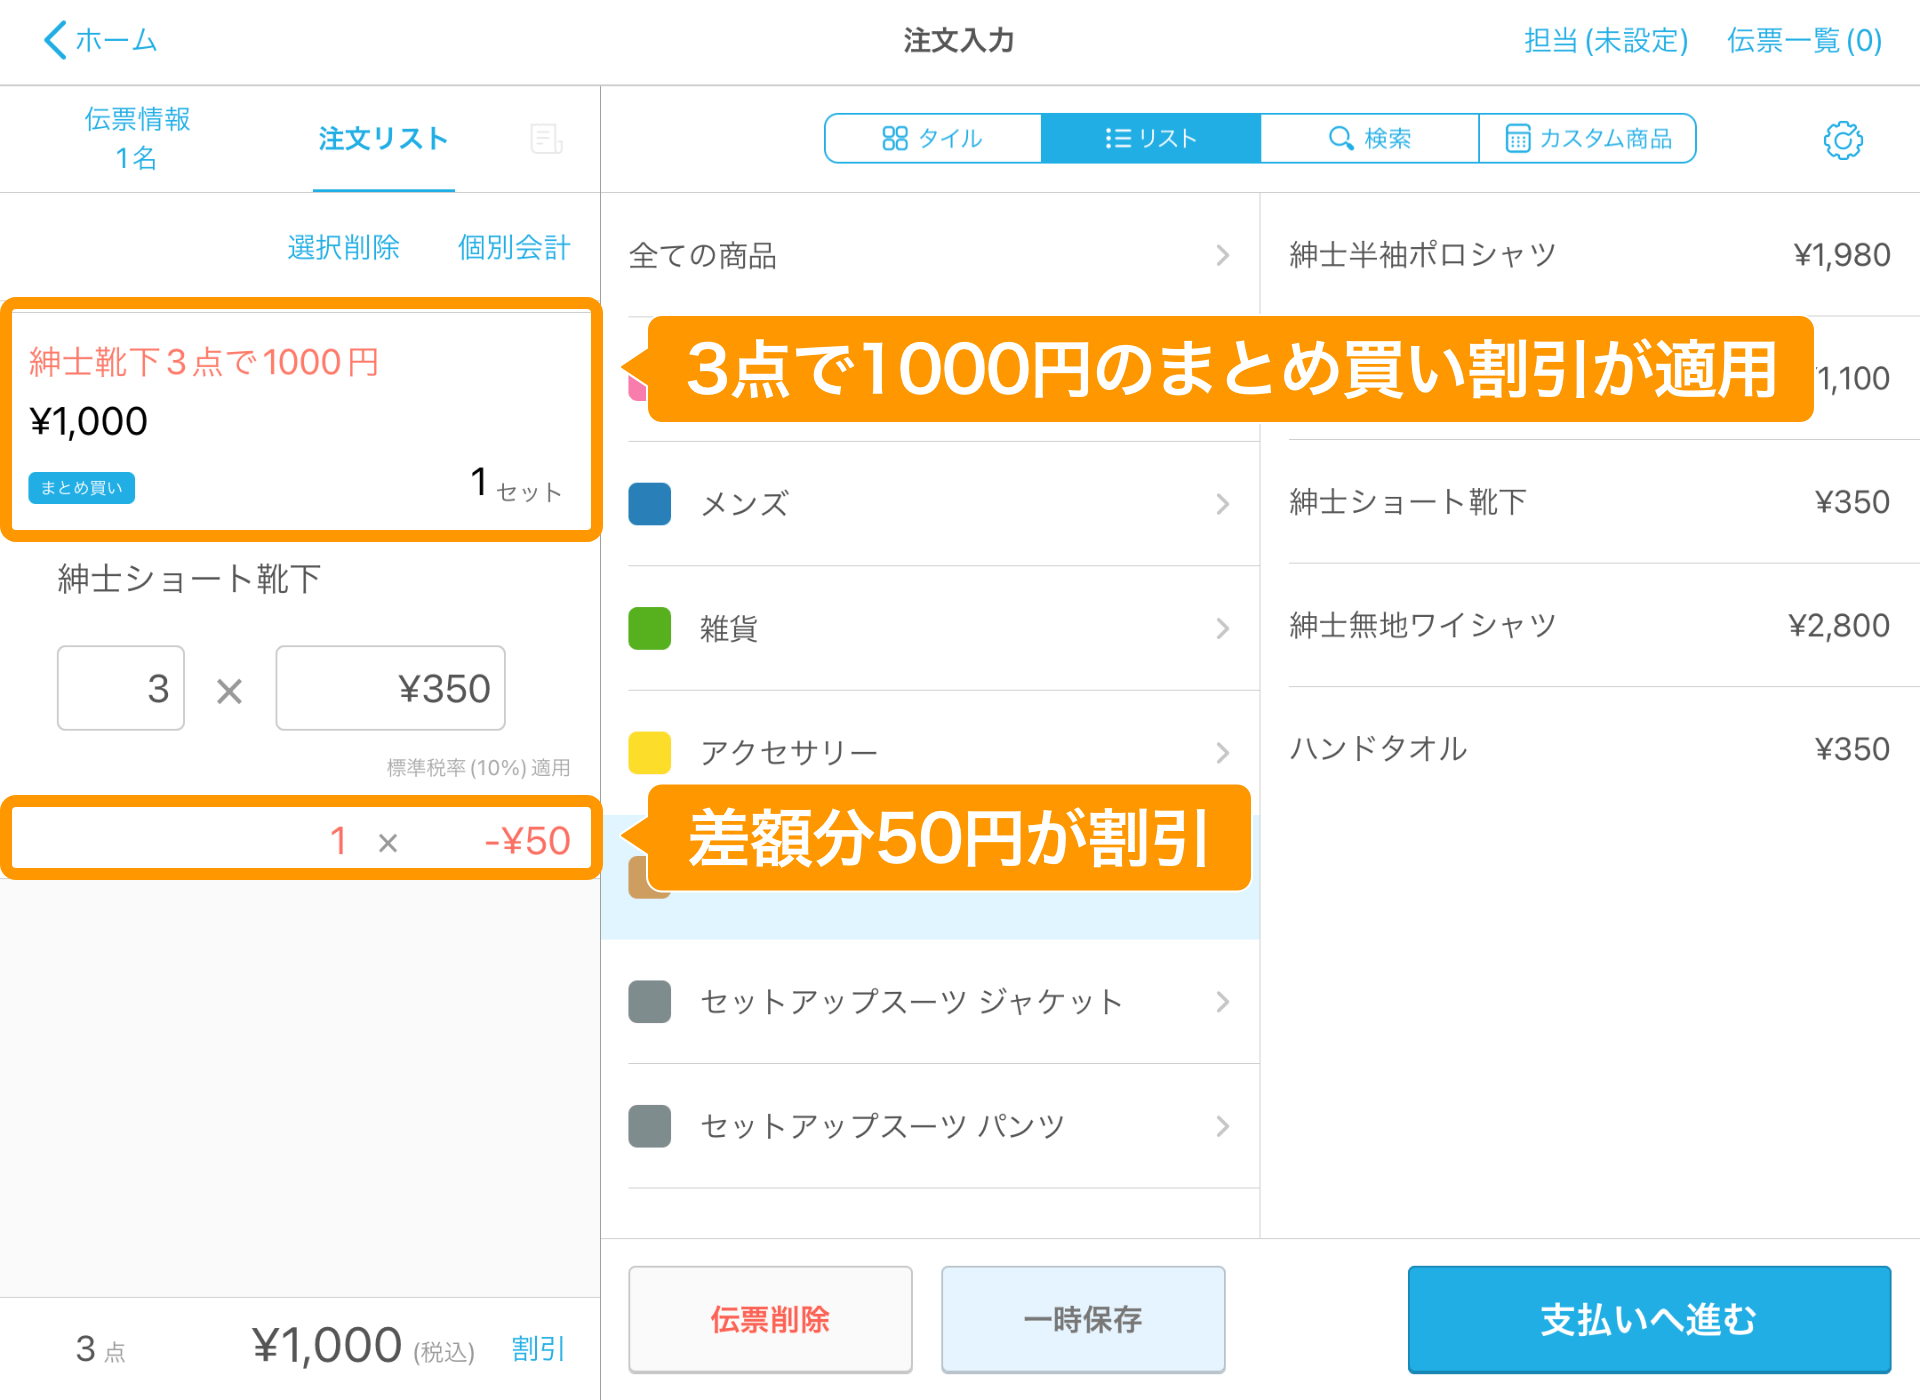 04 Airレジ 注文入力画面 3点で1000円のまとめ買い割引が適用 差額分50円が割引